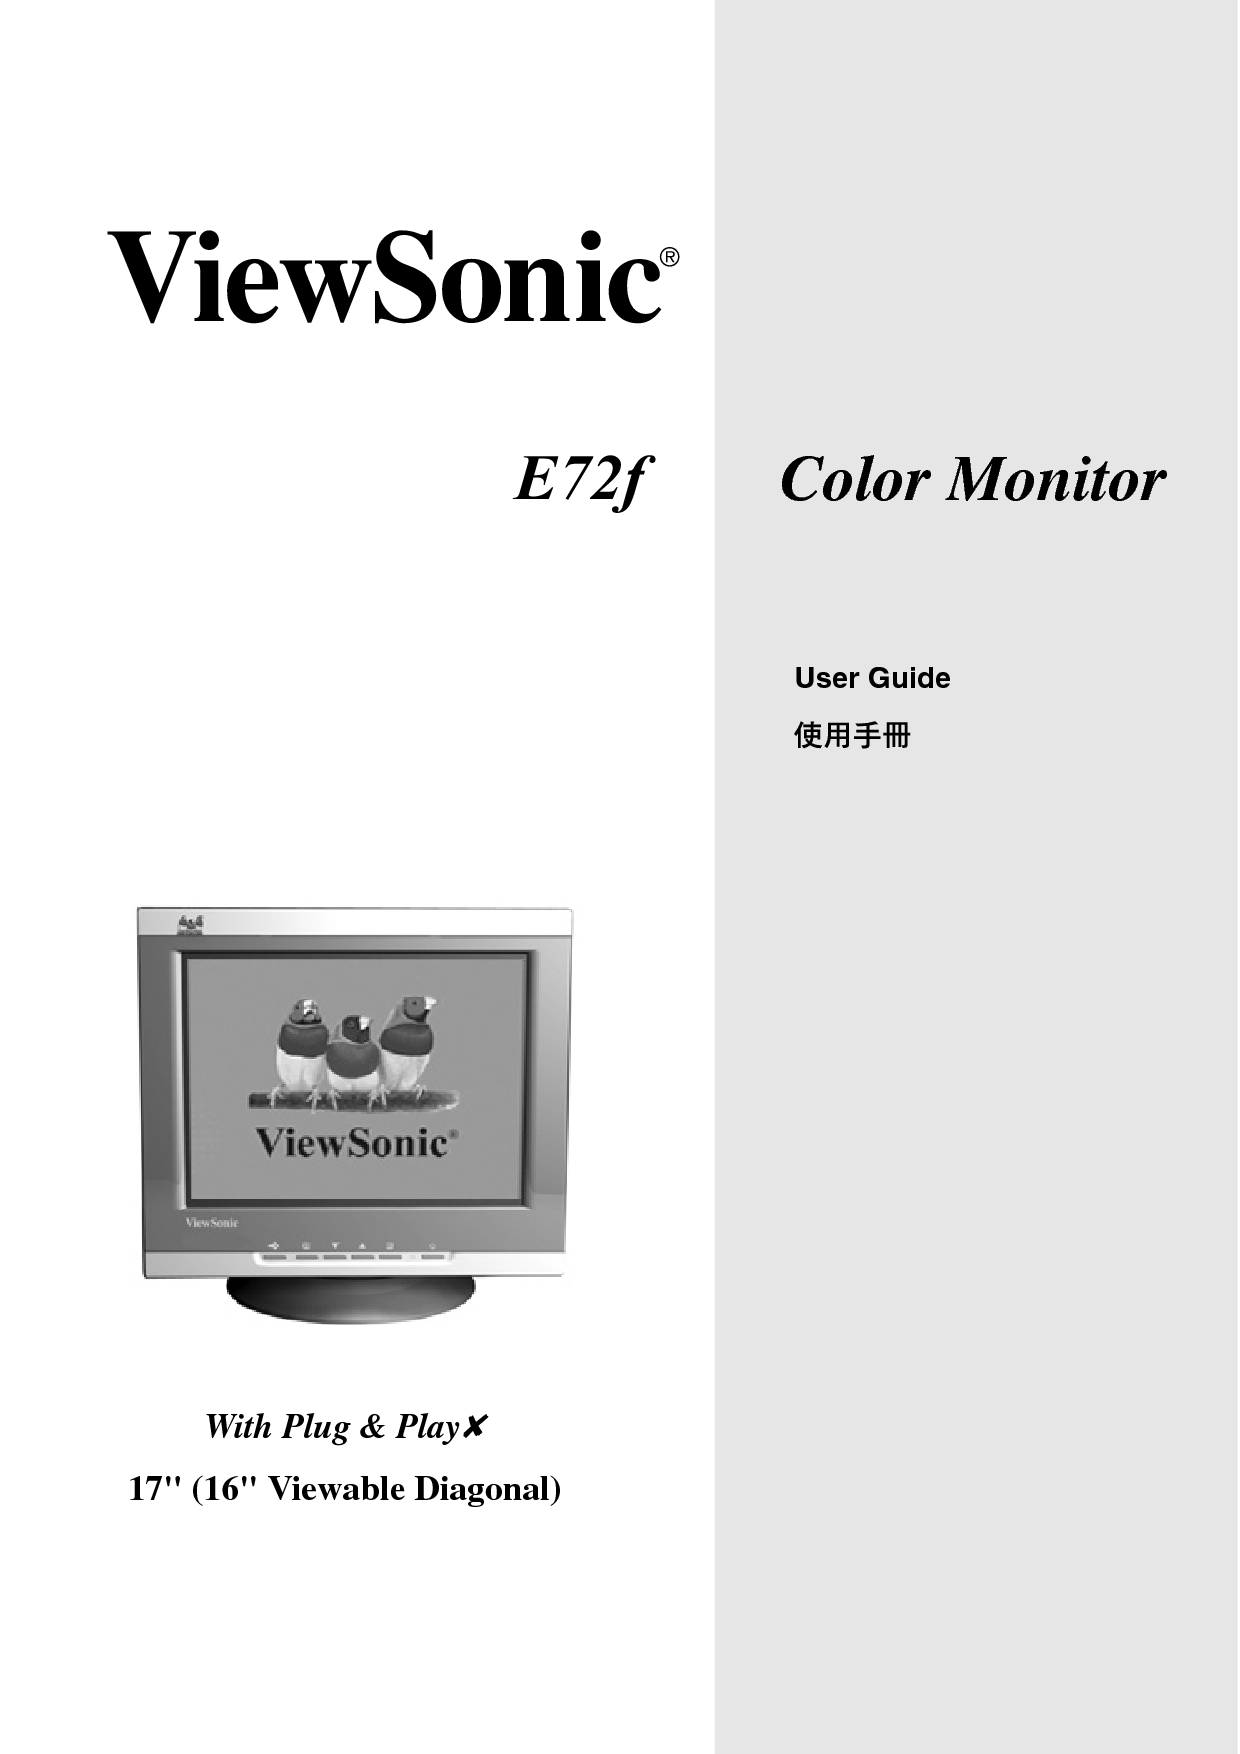 优派 ViewSonic E72f 使用手册 封面